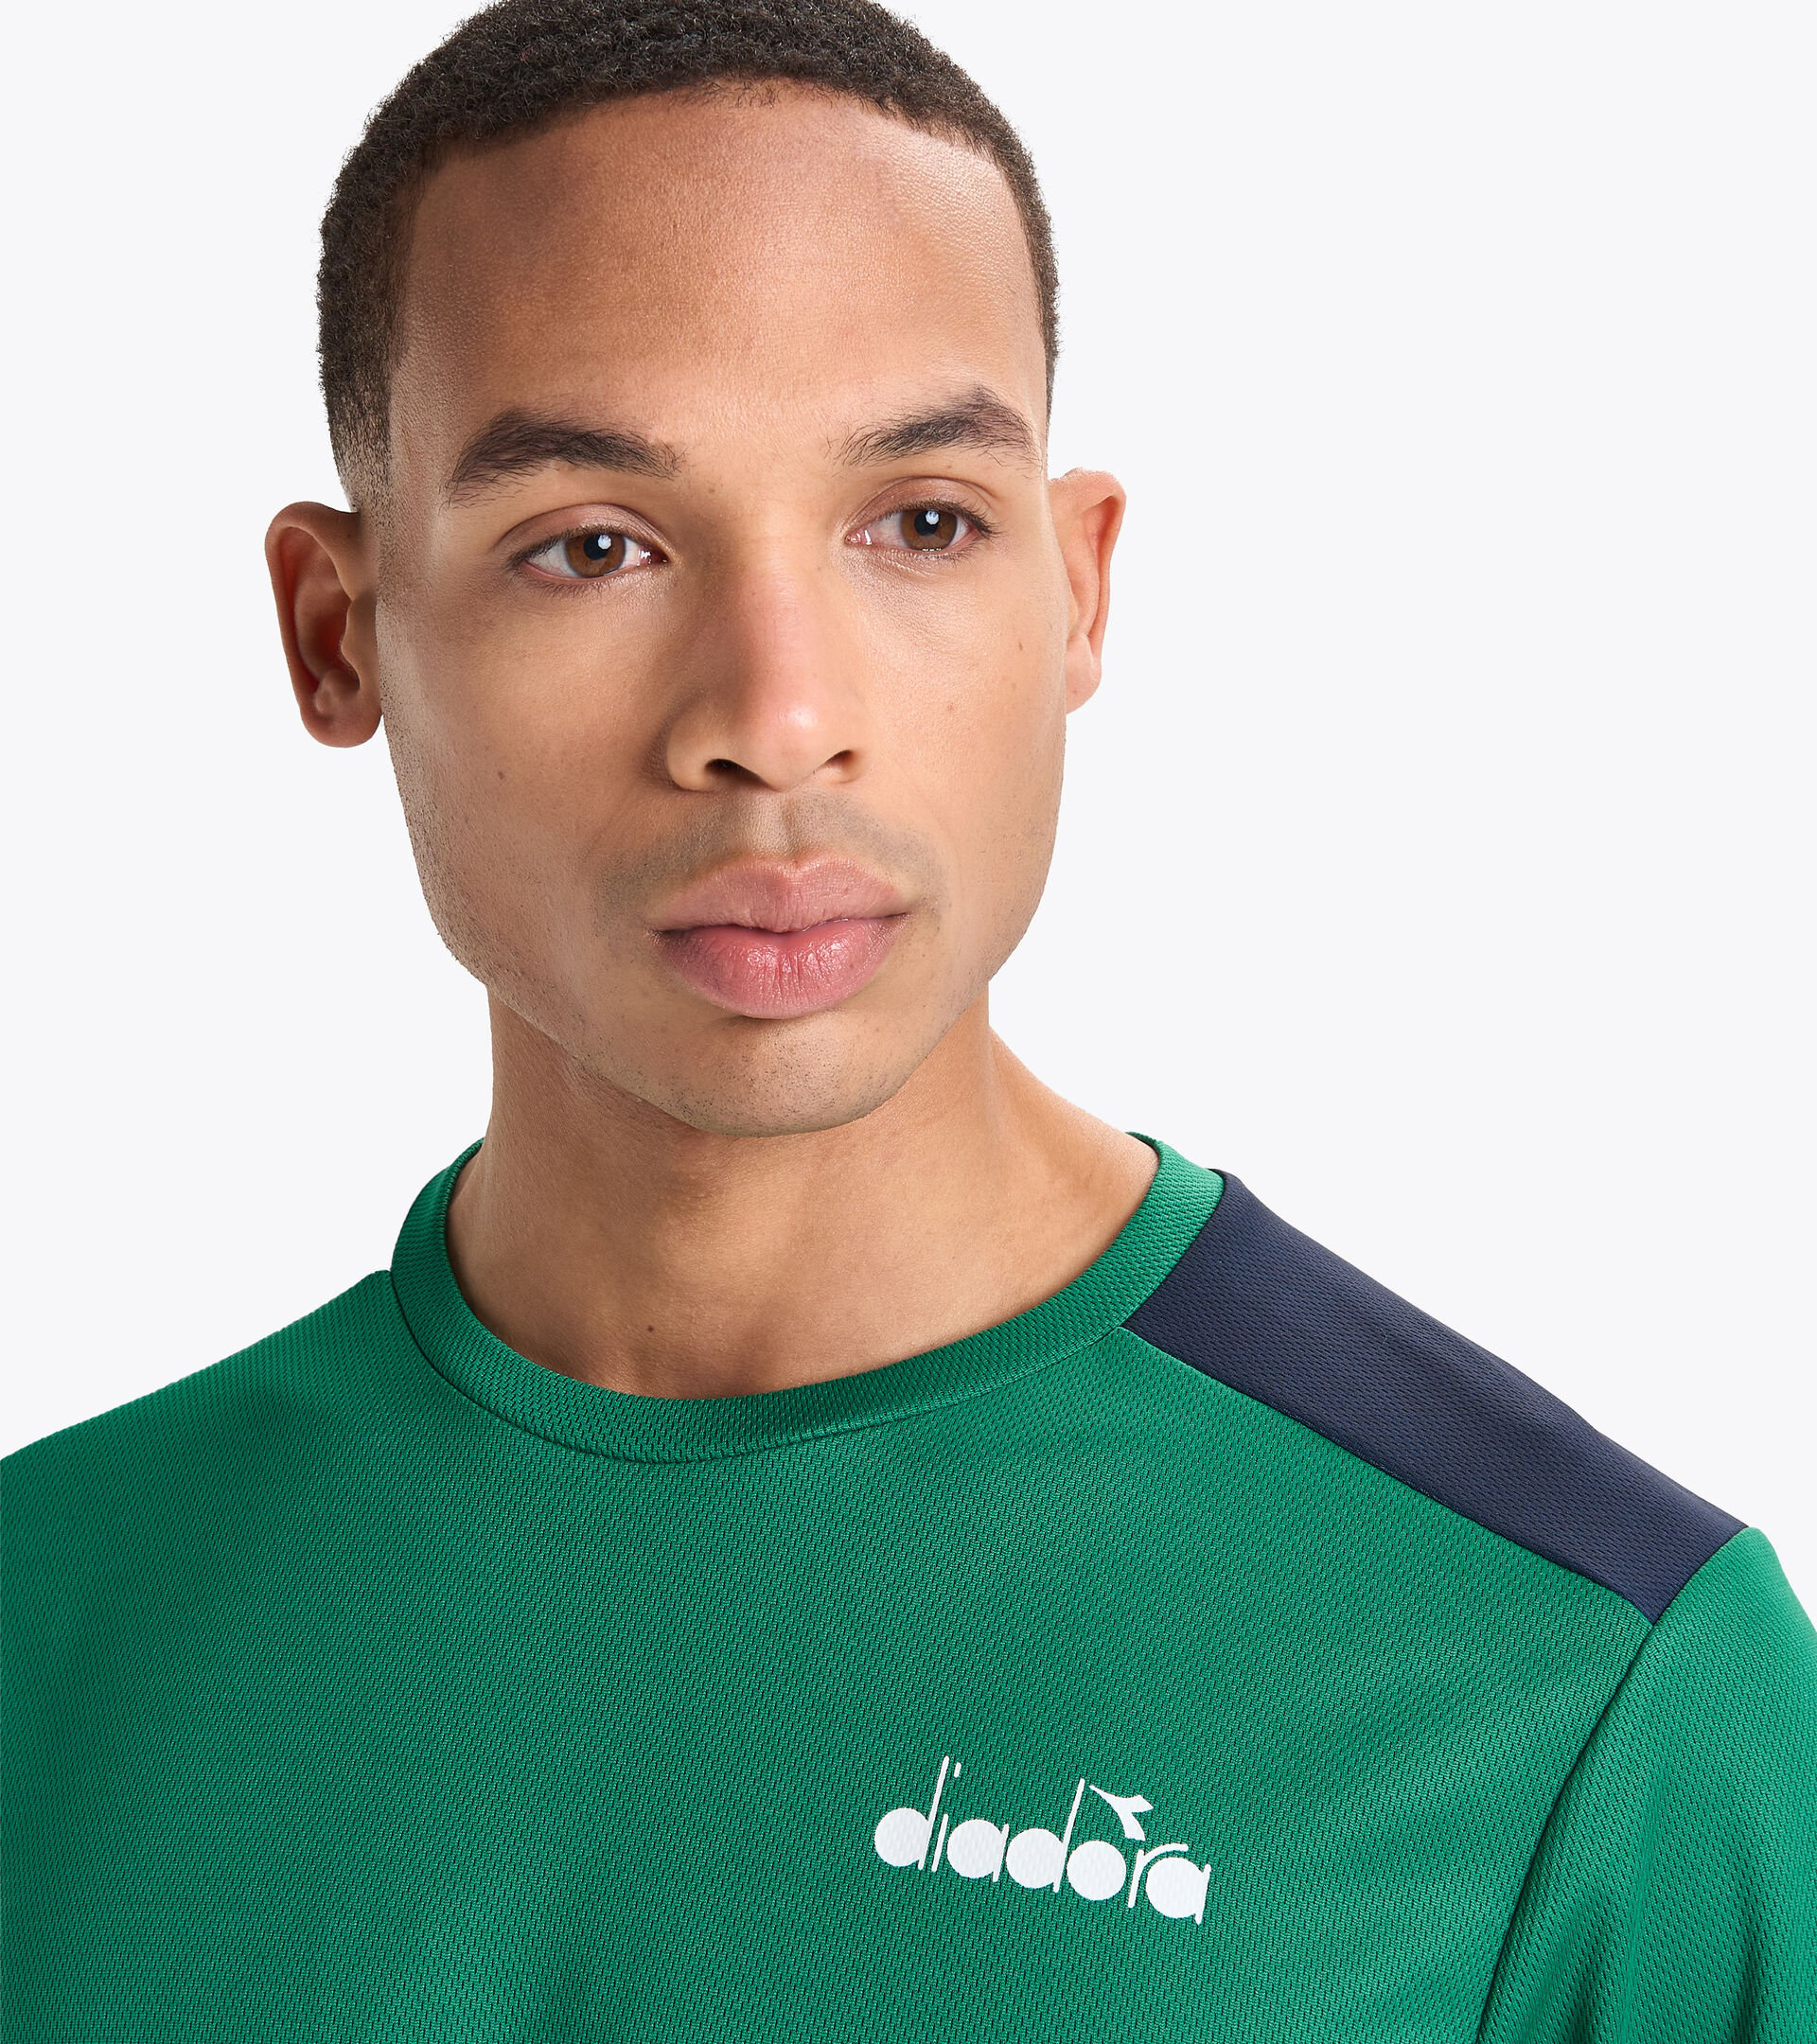 T-shirt de tennis - Homme SS CORE T-SHIRT T VERT BLEU OUTREMER - Diadora